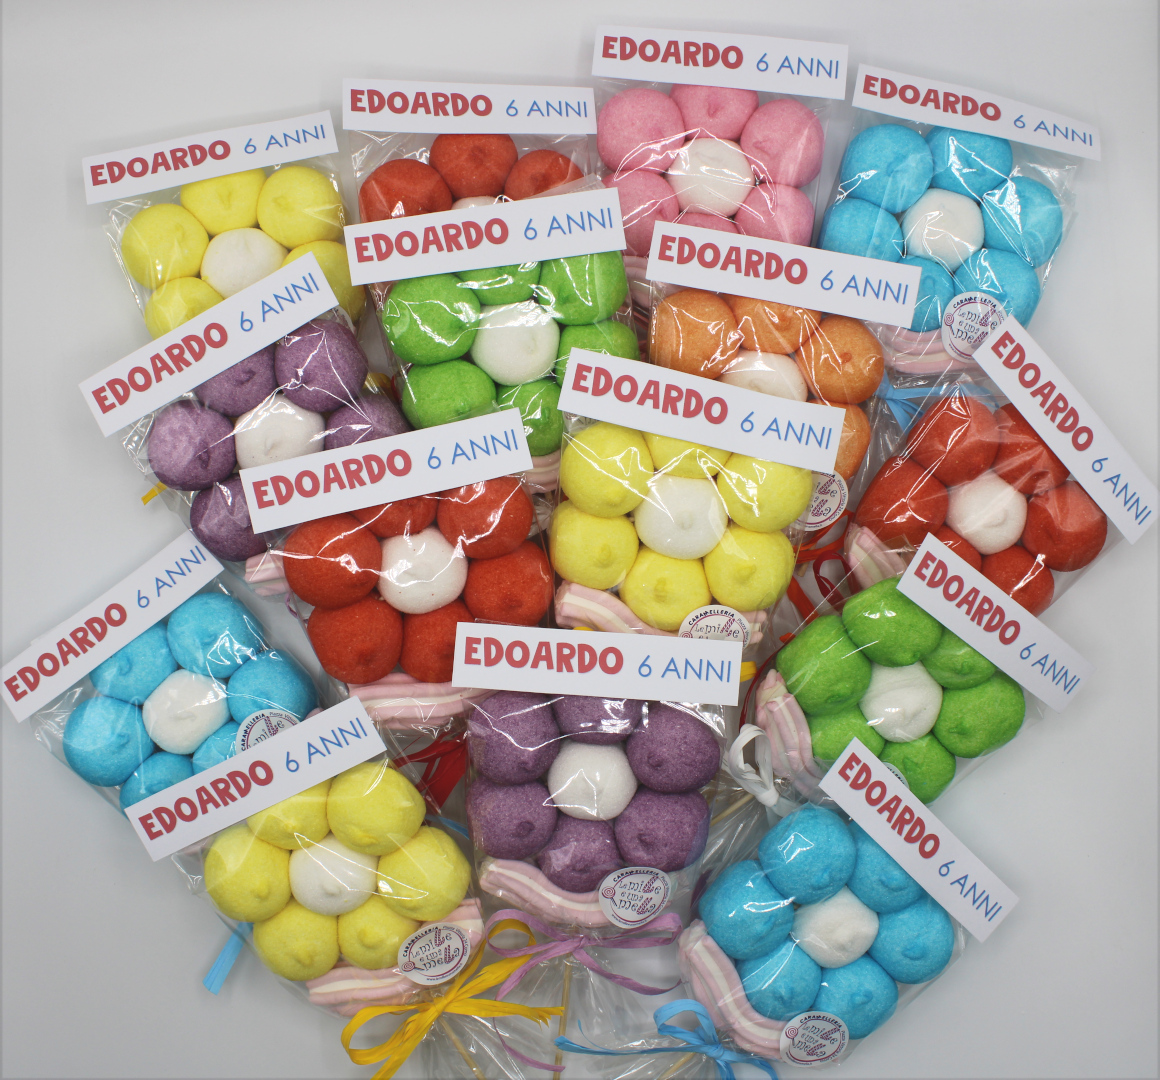 Come per Incanto on X: #regali #caramelle #dolci #compleanno #auguri da  noi simpatici sacchettini di caramelle colorati e personalizzati!   / X